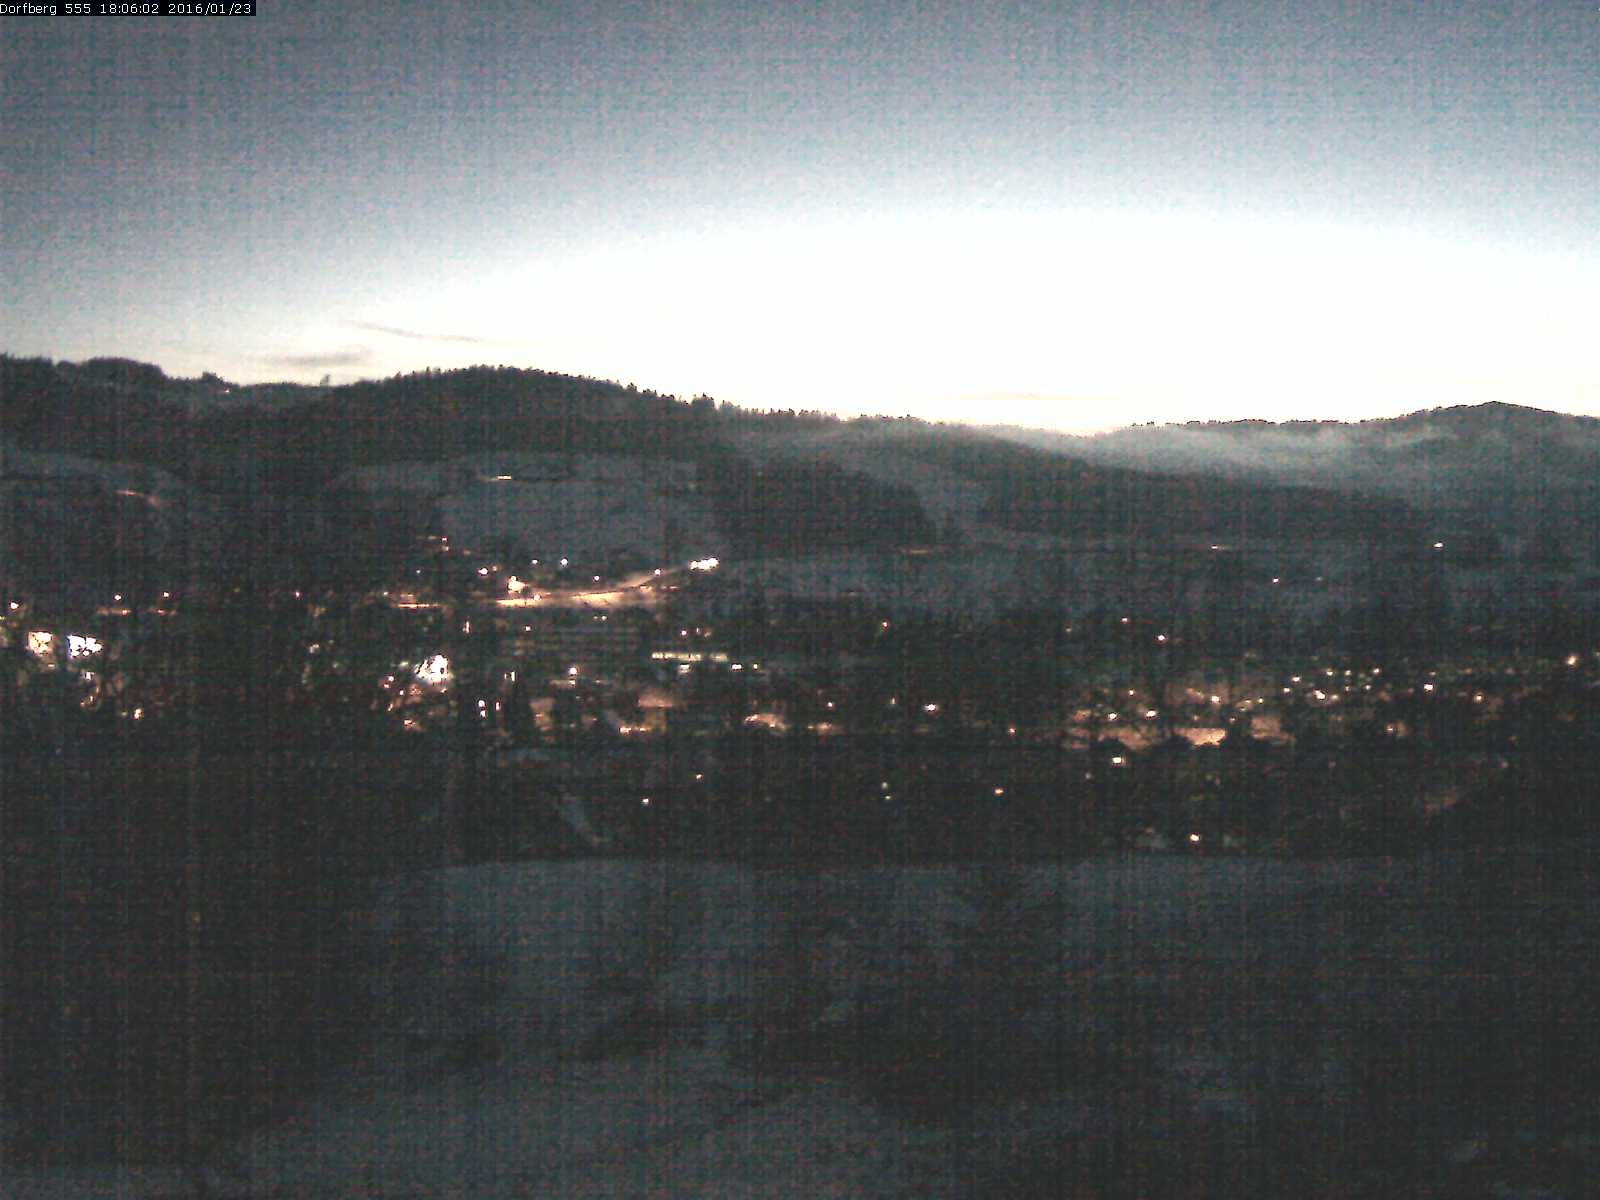 Webcam-Bild: Aussicht vom Dorfberg in Langnau 20160123-180602